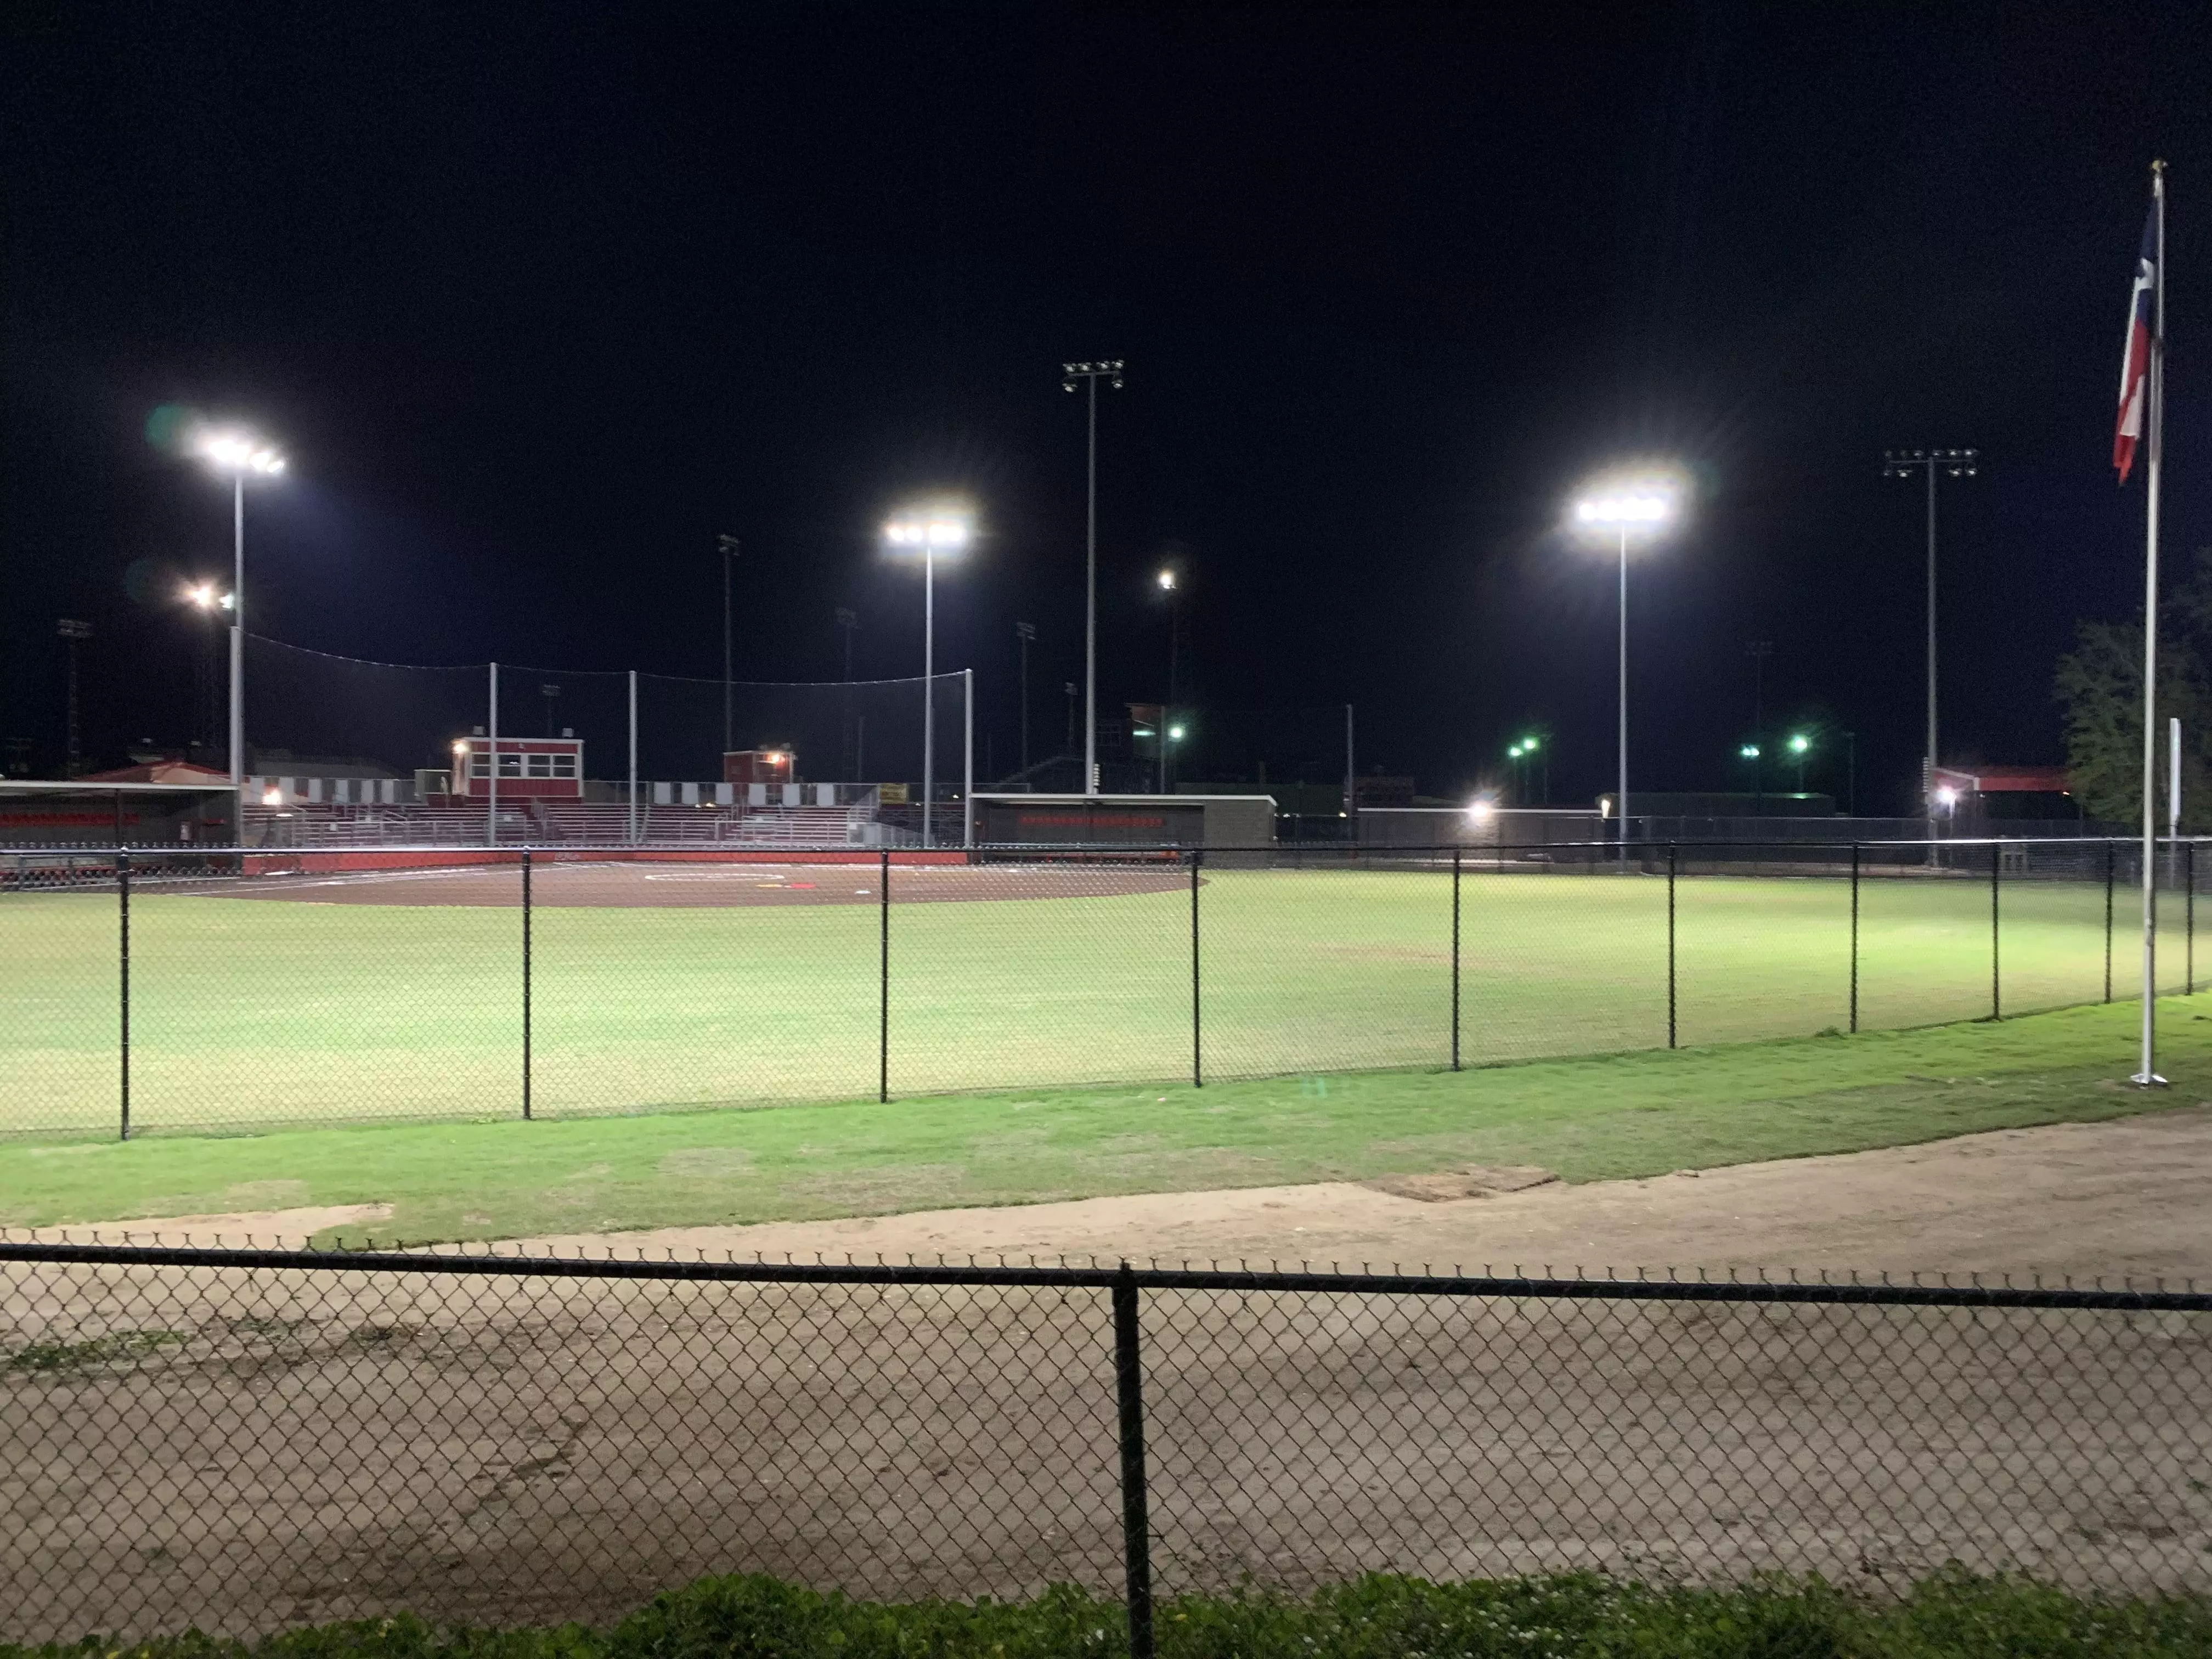 Sample of sports field lighting in a baseball field